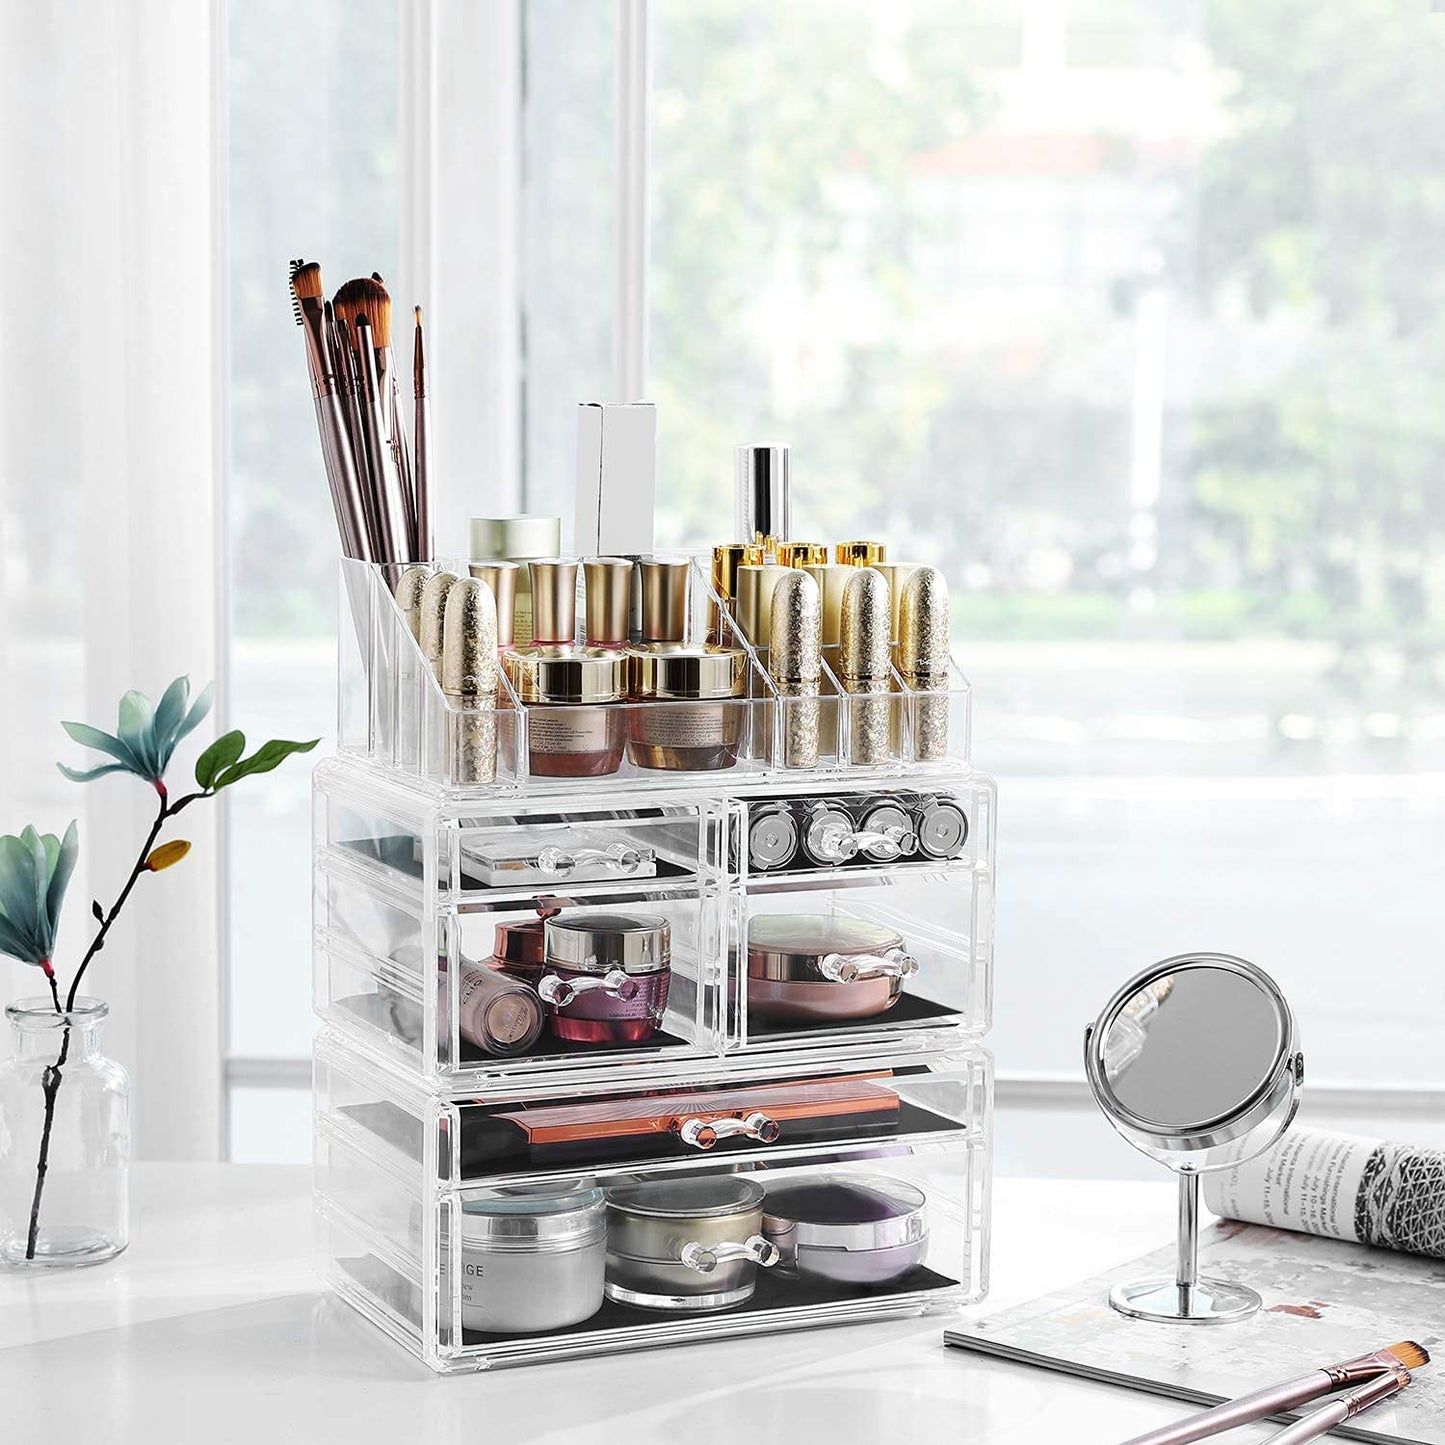 Rangement maquillage Nancy's Bushy Lake - Organisateur de cosmétiques - Boîte de maquillage - Acrylique - 2 parties - 6 tiroirs - Transparent/Blanc - 24 x 30 x 13,5 cm